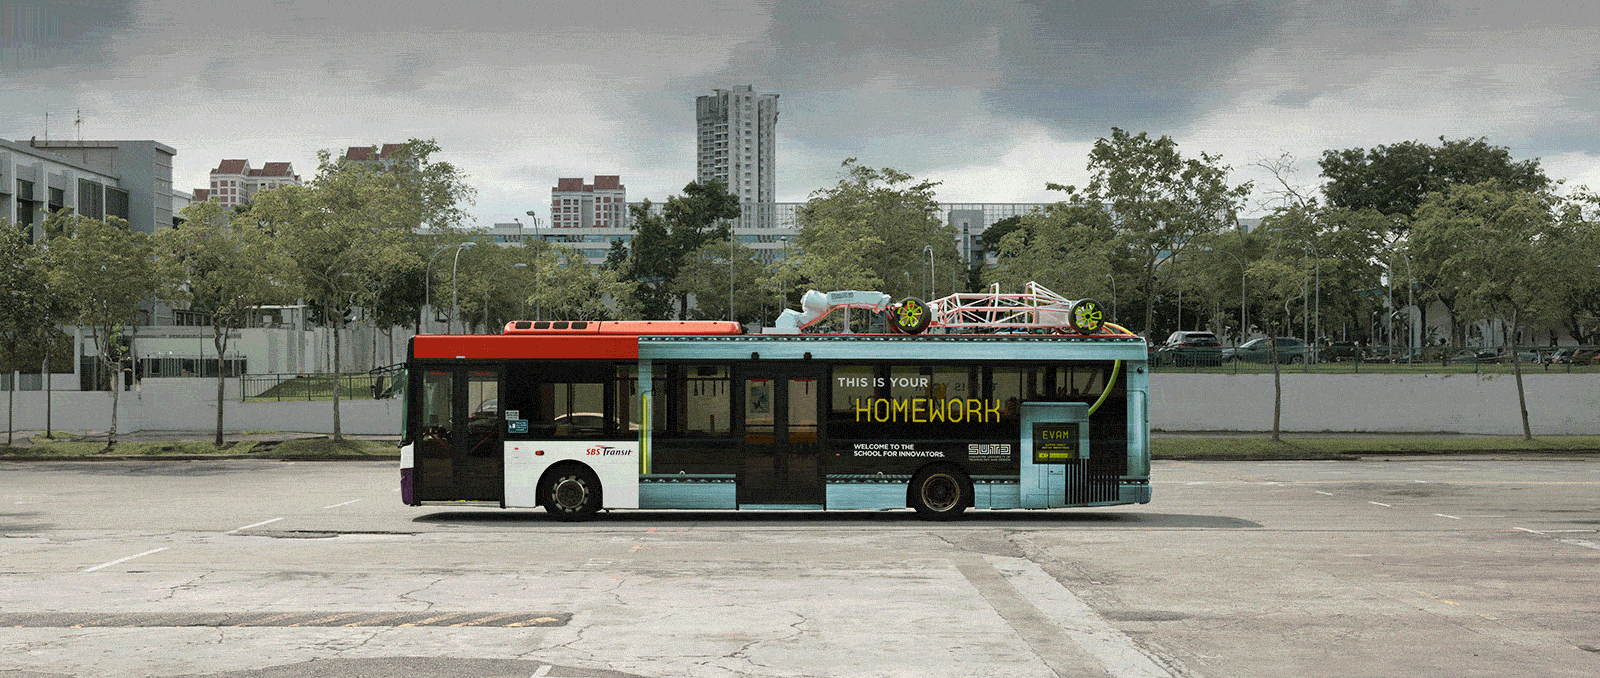 Singapore’s most complex 3D bus ads